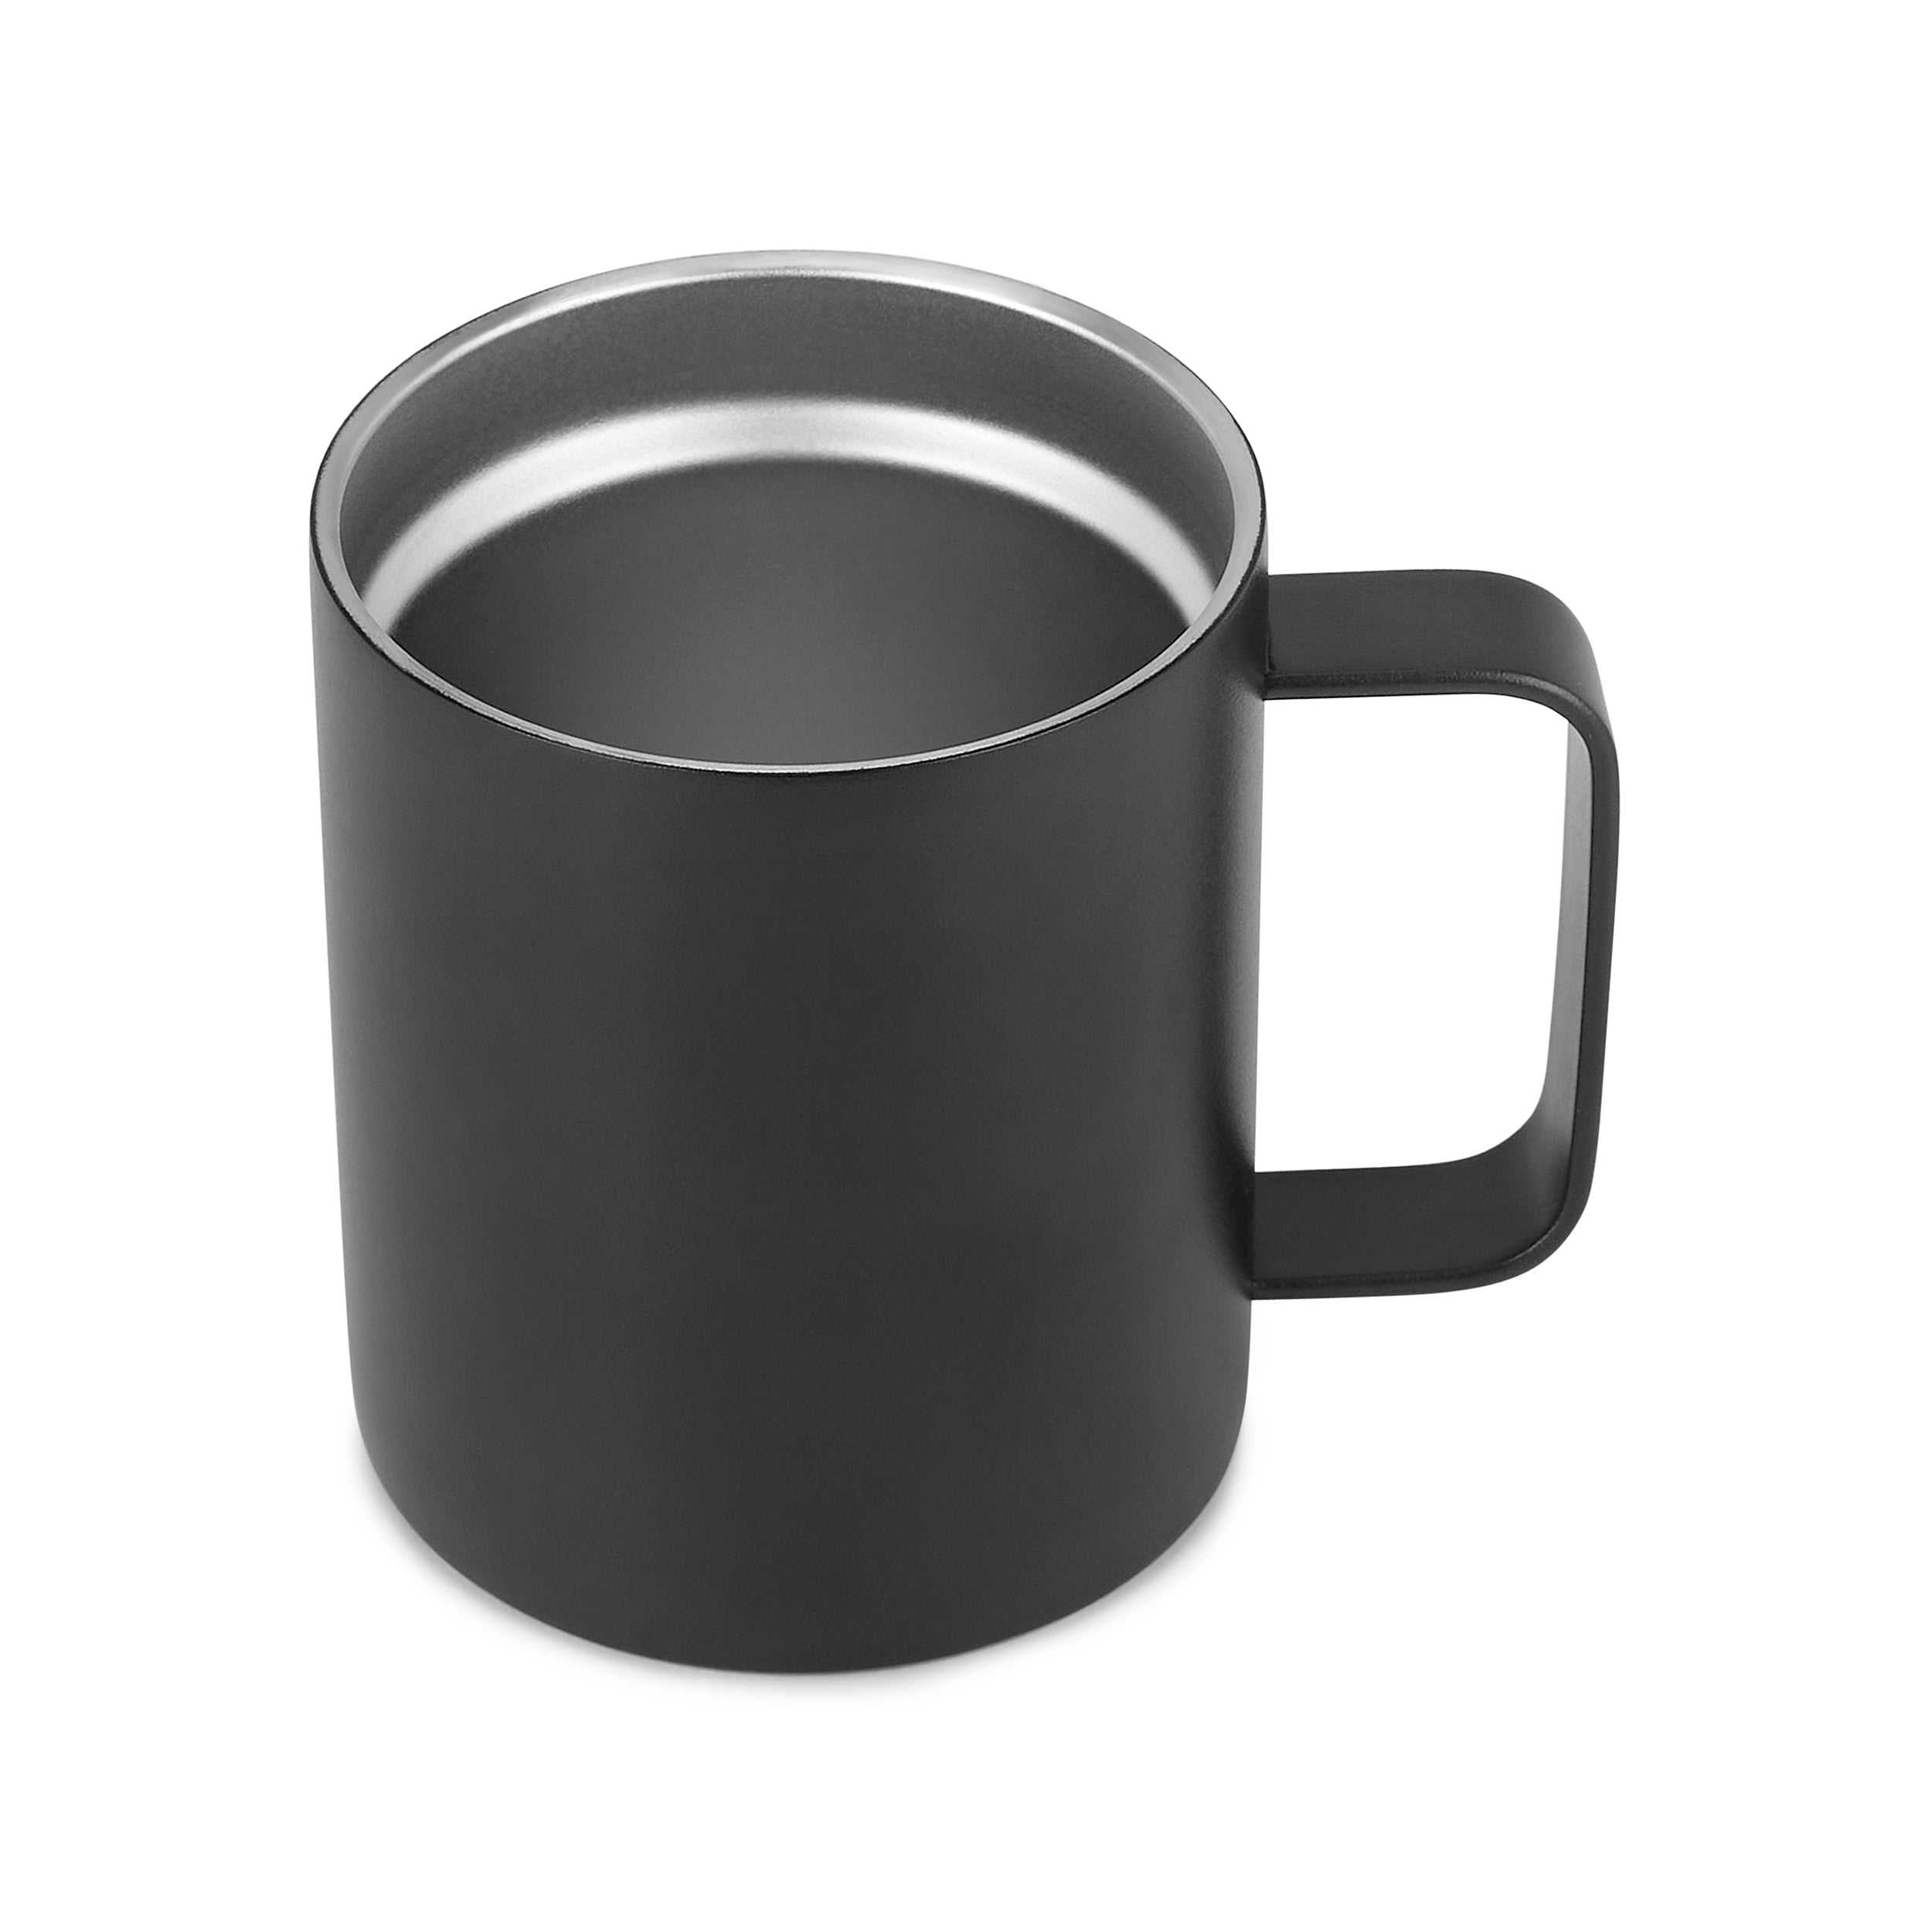 12oz Coffee Mug For Vet (Veterinary Doctor)